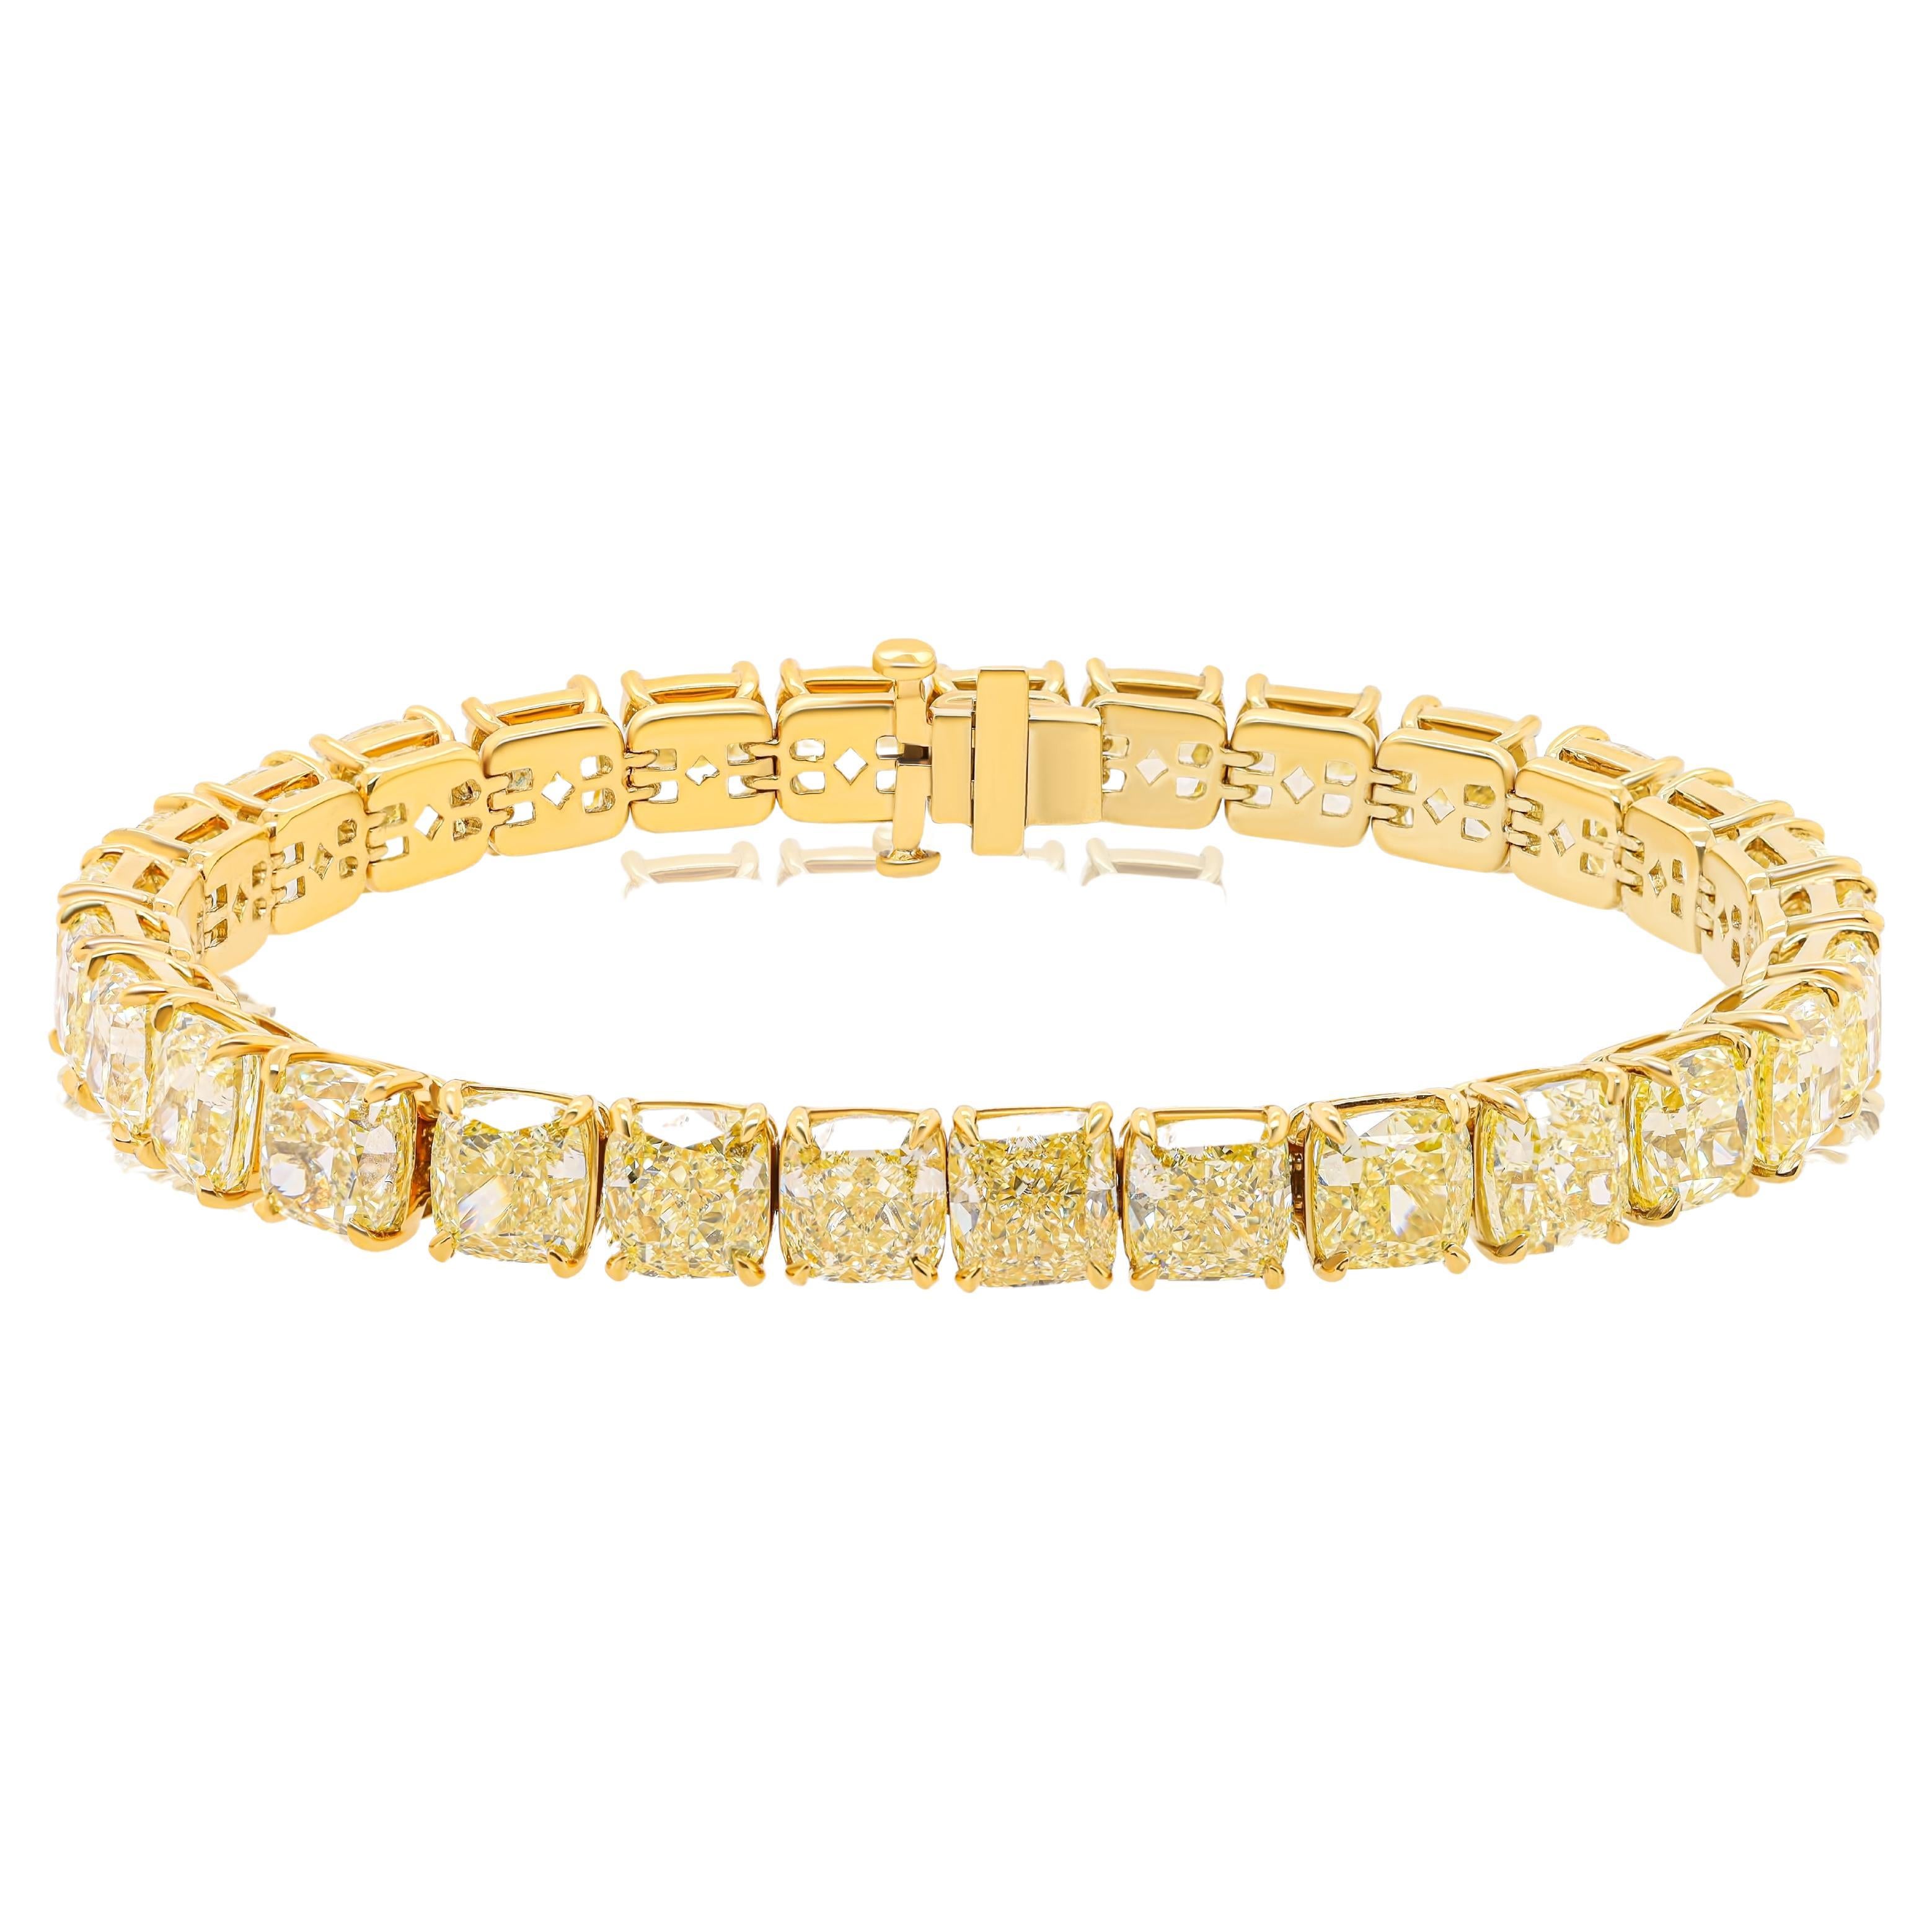 Diana M. 18 kt Yellow Diamond  Bracelet with 35.07ct Fancy Yellow Diamonds  For Sale